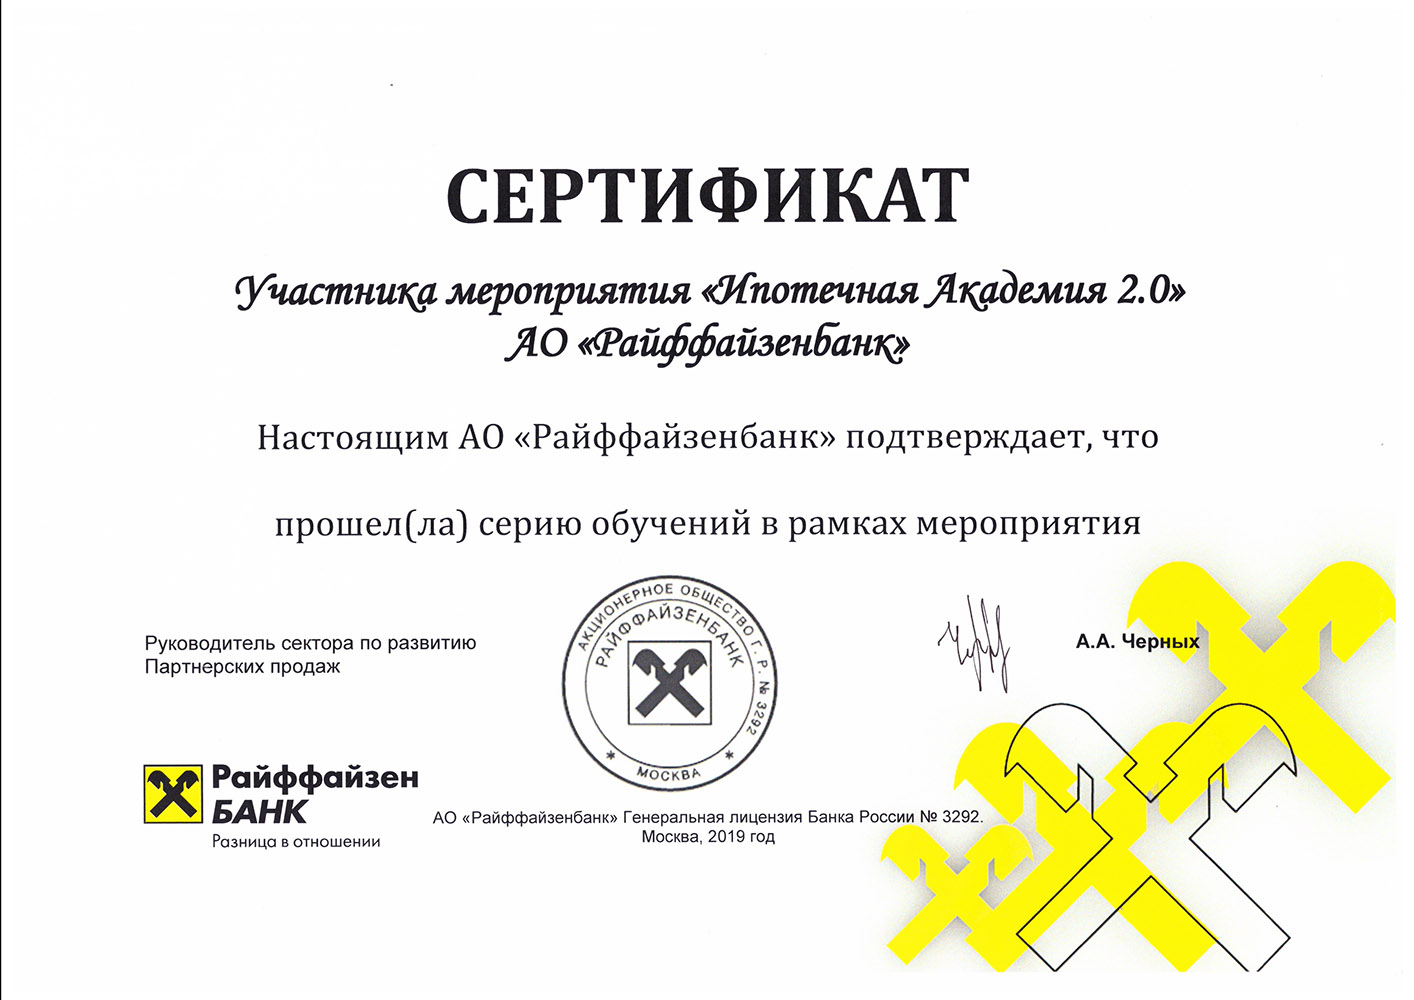 Цыганова Наталья - сертификат